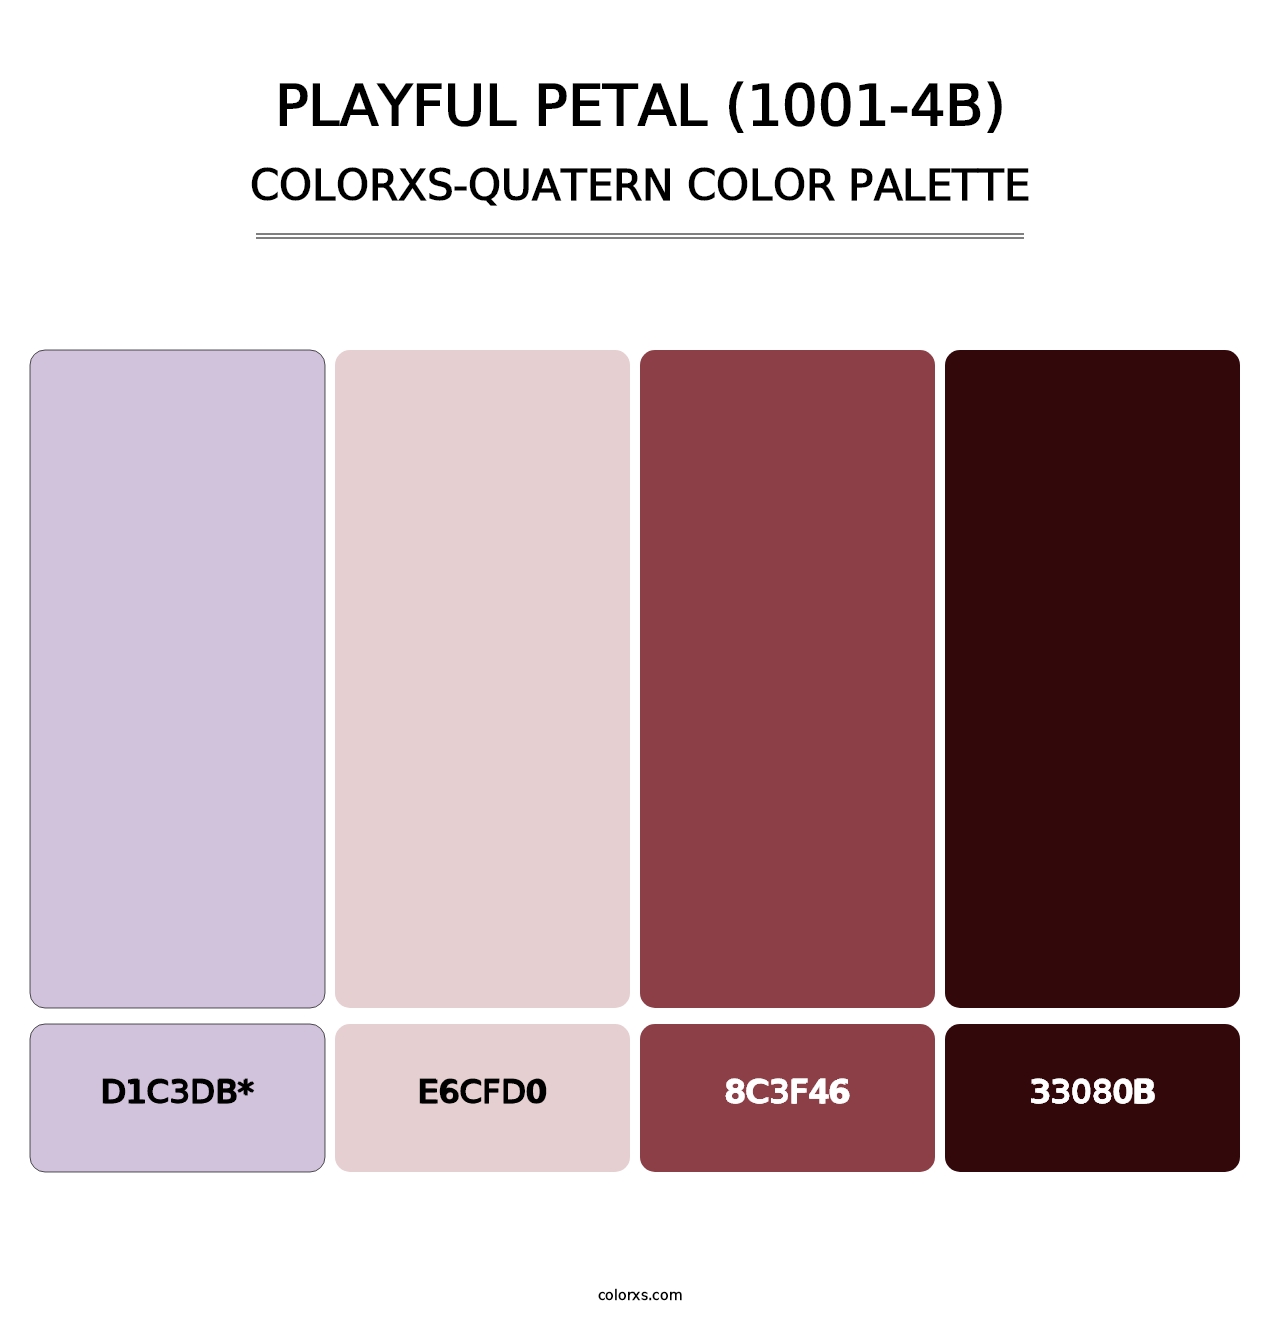 Playful Petal (1001-4B) - Colorxs Quatern Palette